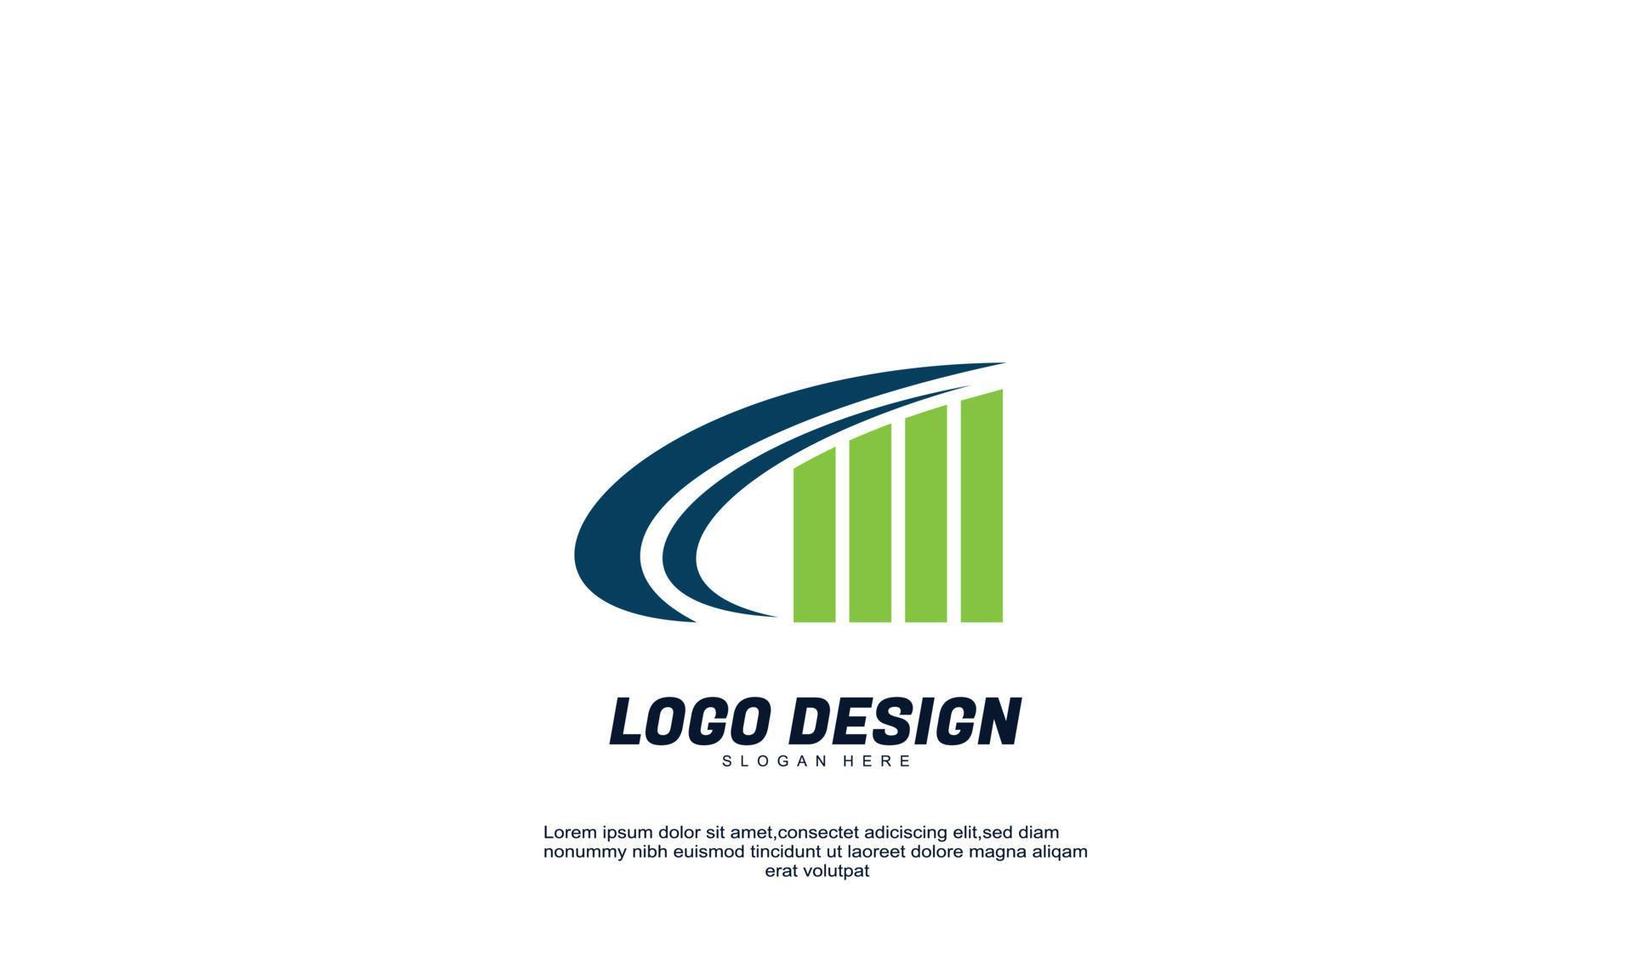 exemplos de design de logotipo de finanças de empresa criativa abstrata de vetor de ações